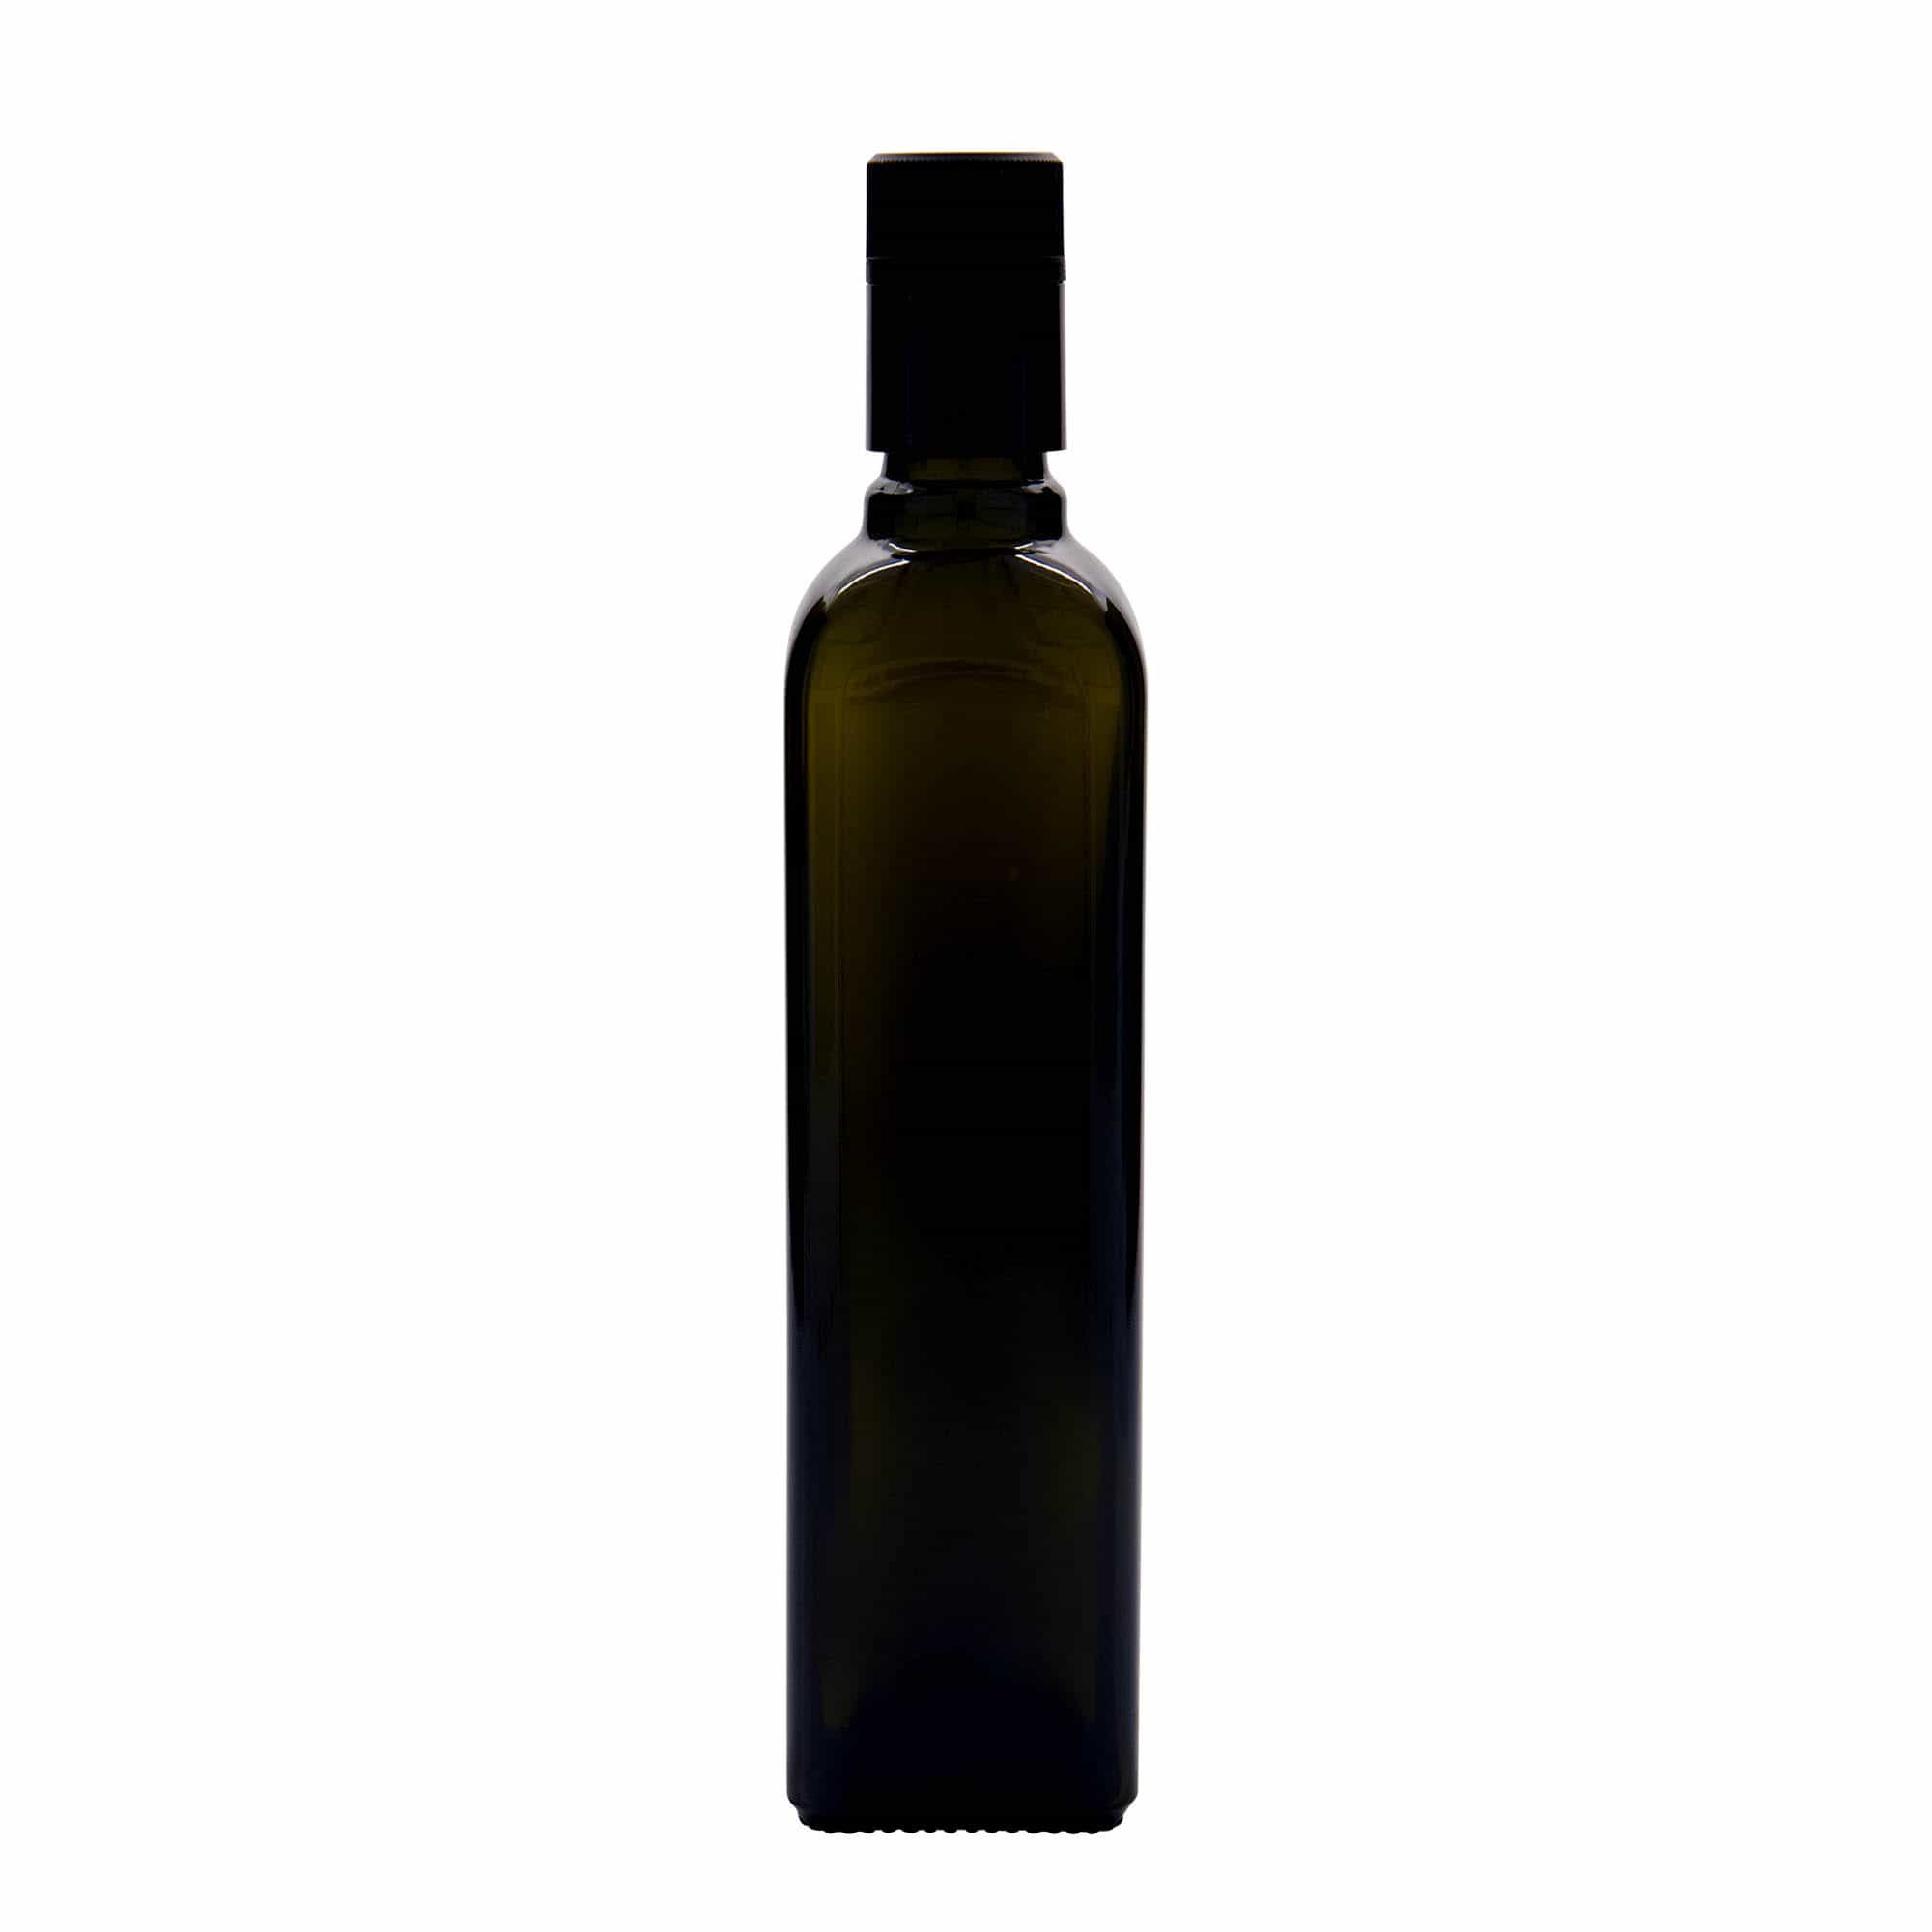 500 ml butelka na ocet/olej 'Quadra', szkło, kwadratowa, kolor zielony antyczny, zamknięcie: DOP